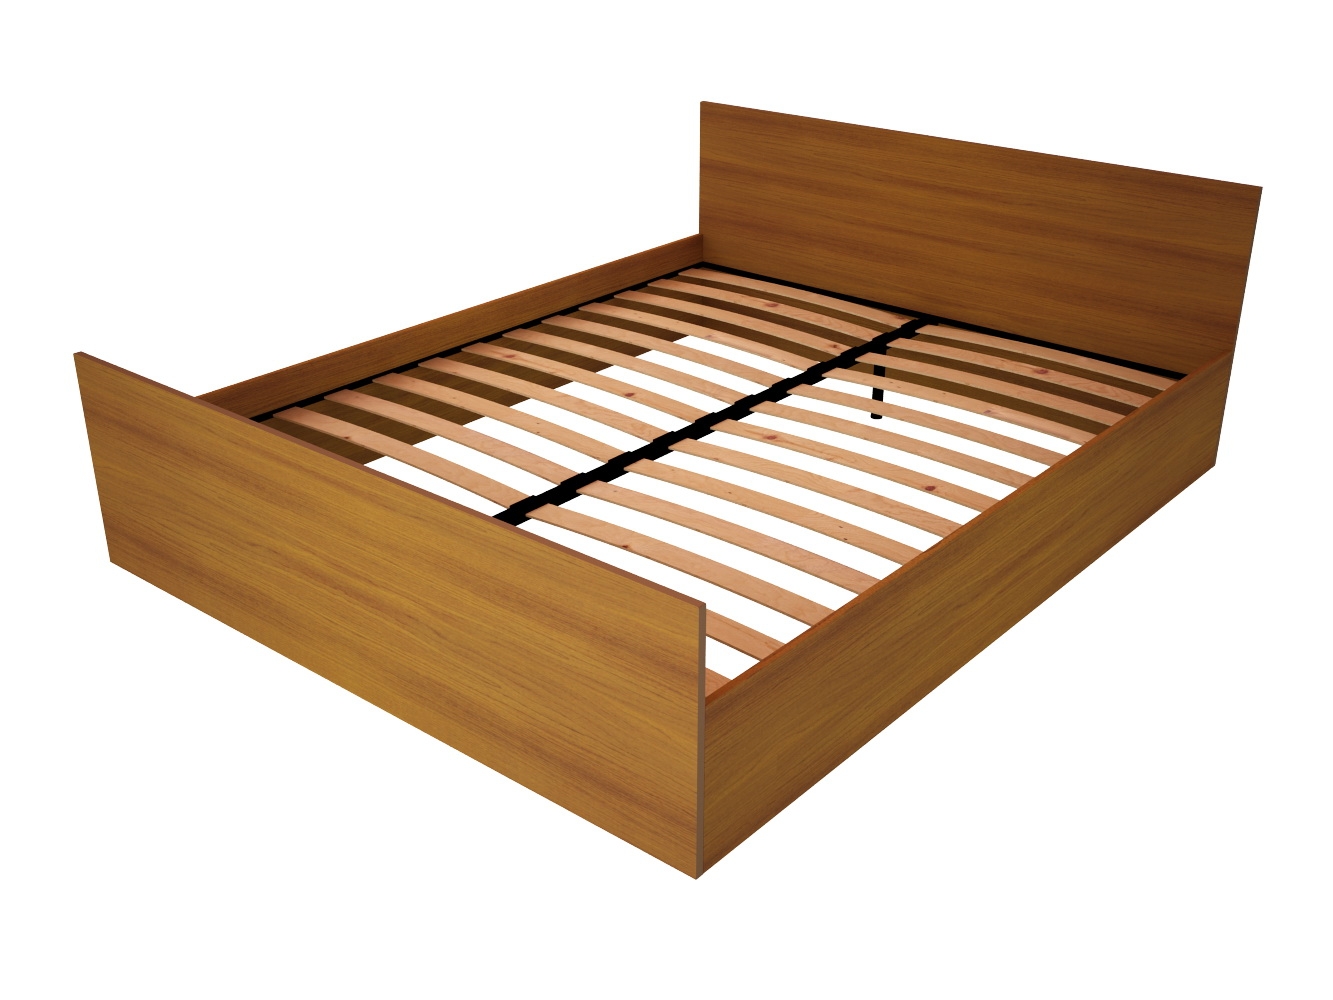 Сборка кровати сакура с выдвижными ящиками пошаговая инструкция